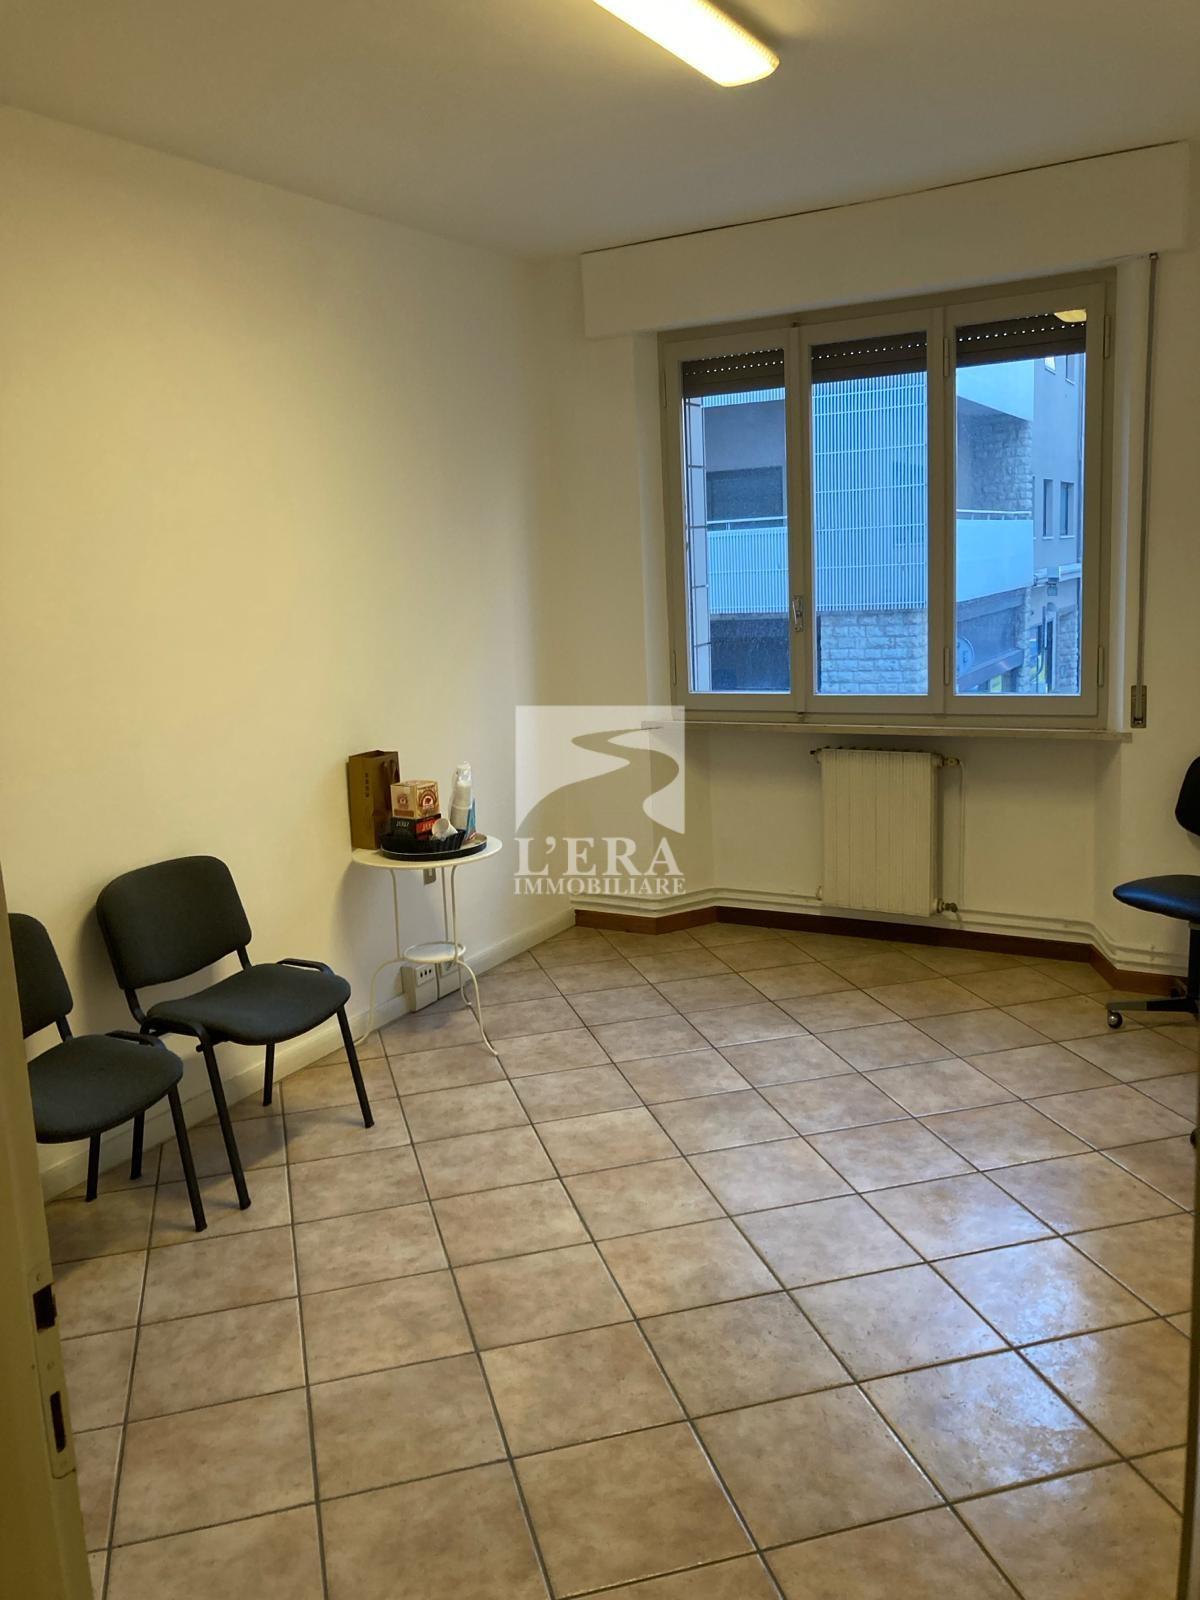 Ufficio / Studio in affitto a Pontedera, 3 locali, prezzo € 500 | PortaleAgenzieImmobiliari.it